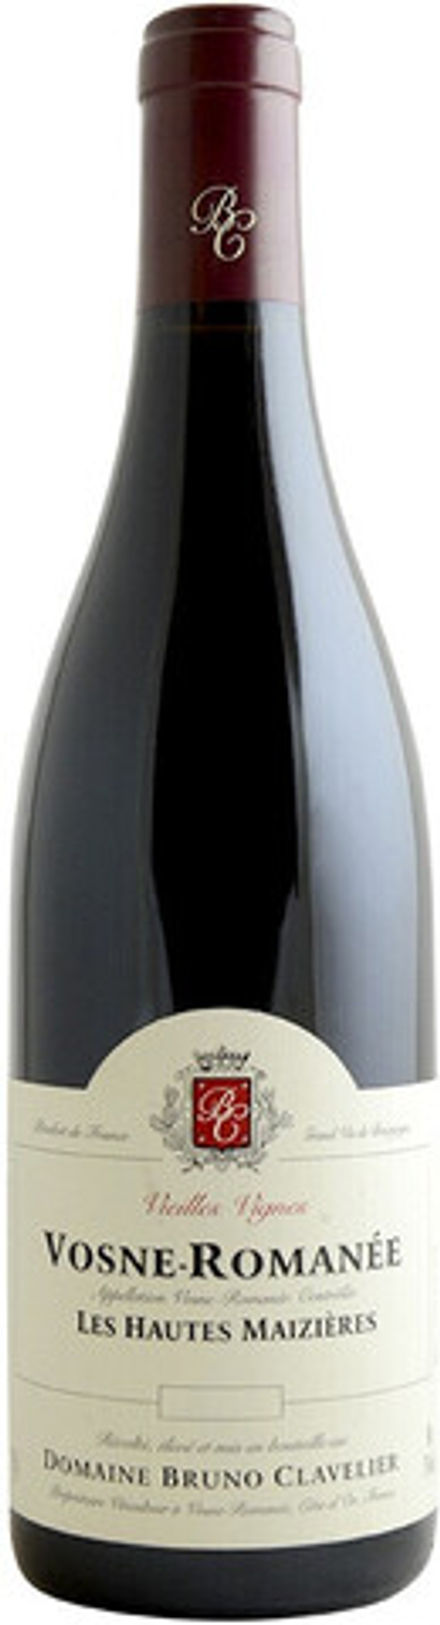 Вино Domaine Bruno Clavelier Vosne-Romanee Les Hautes Maizieres Vieilles Vignes AOC, 0,75 л.